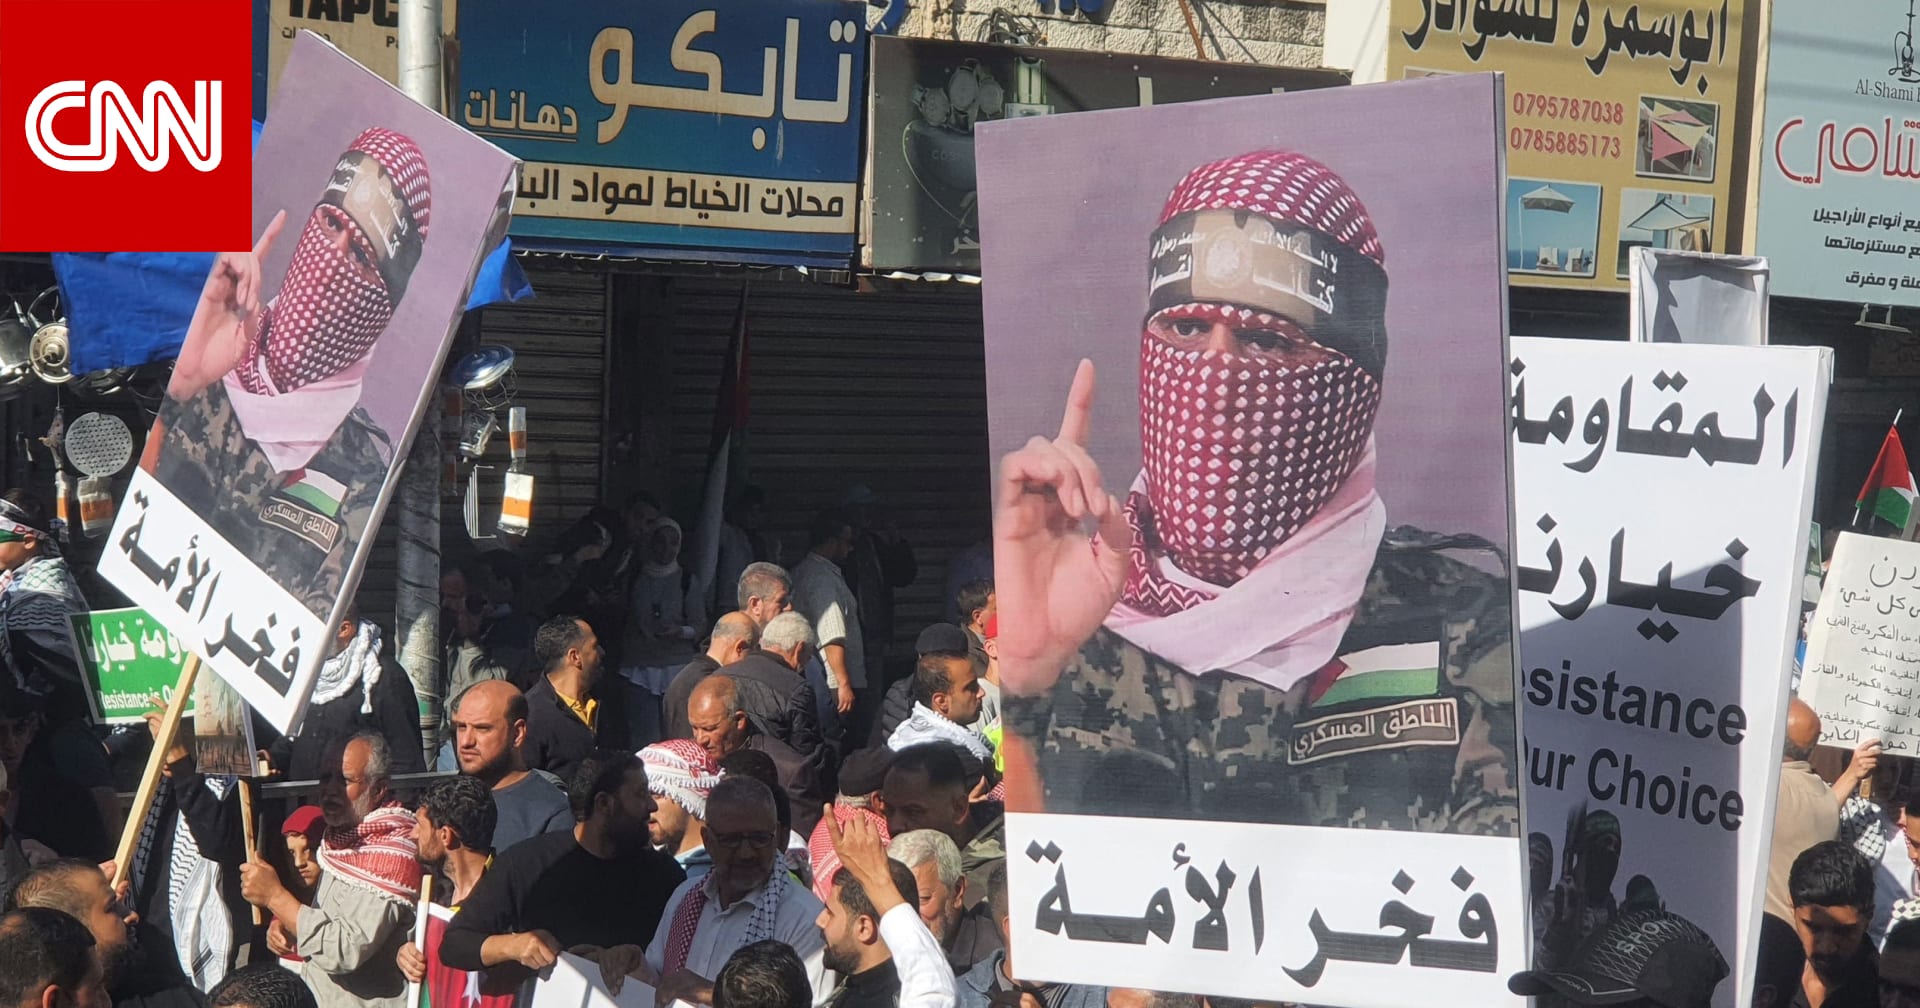 مسيرات حاشدة في الأردن رفعت شعارات منها "المقاومة خيارنا"